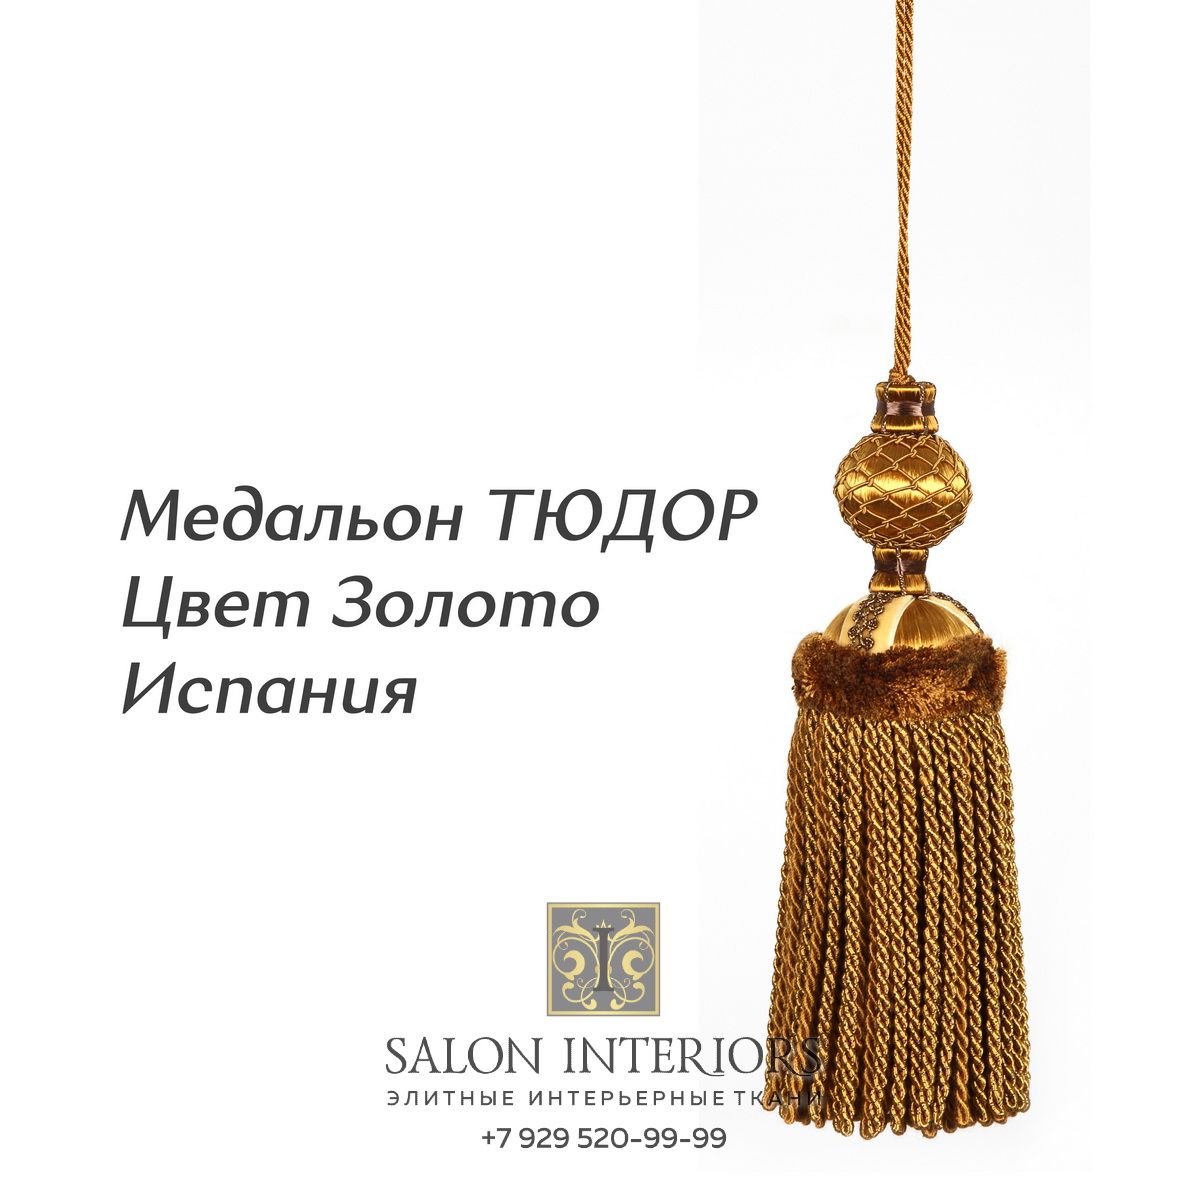 Медальон "ТЮДОР" Арт MK985-1844 Цвет Золото разм.31см Испания